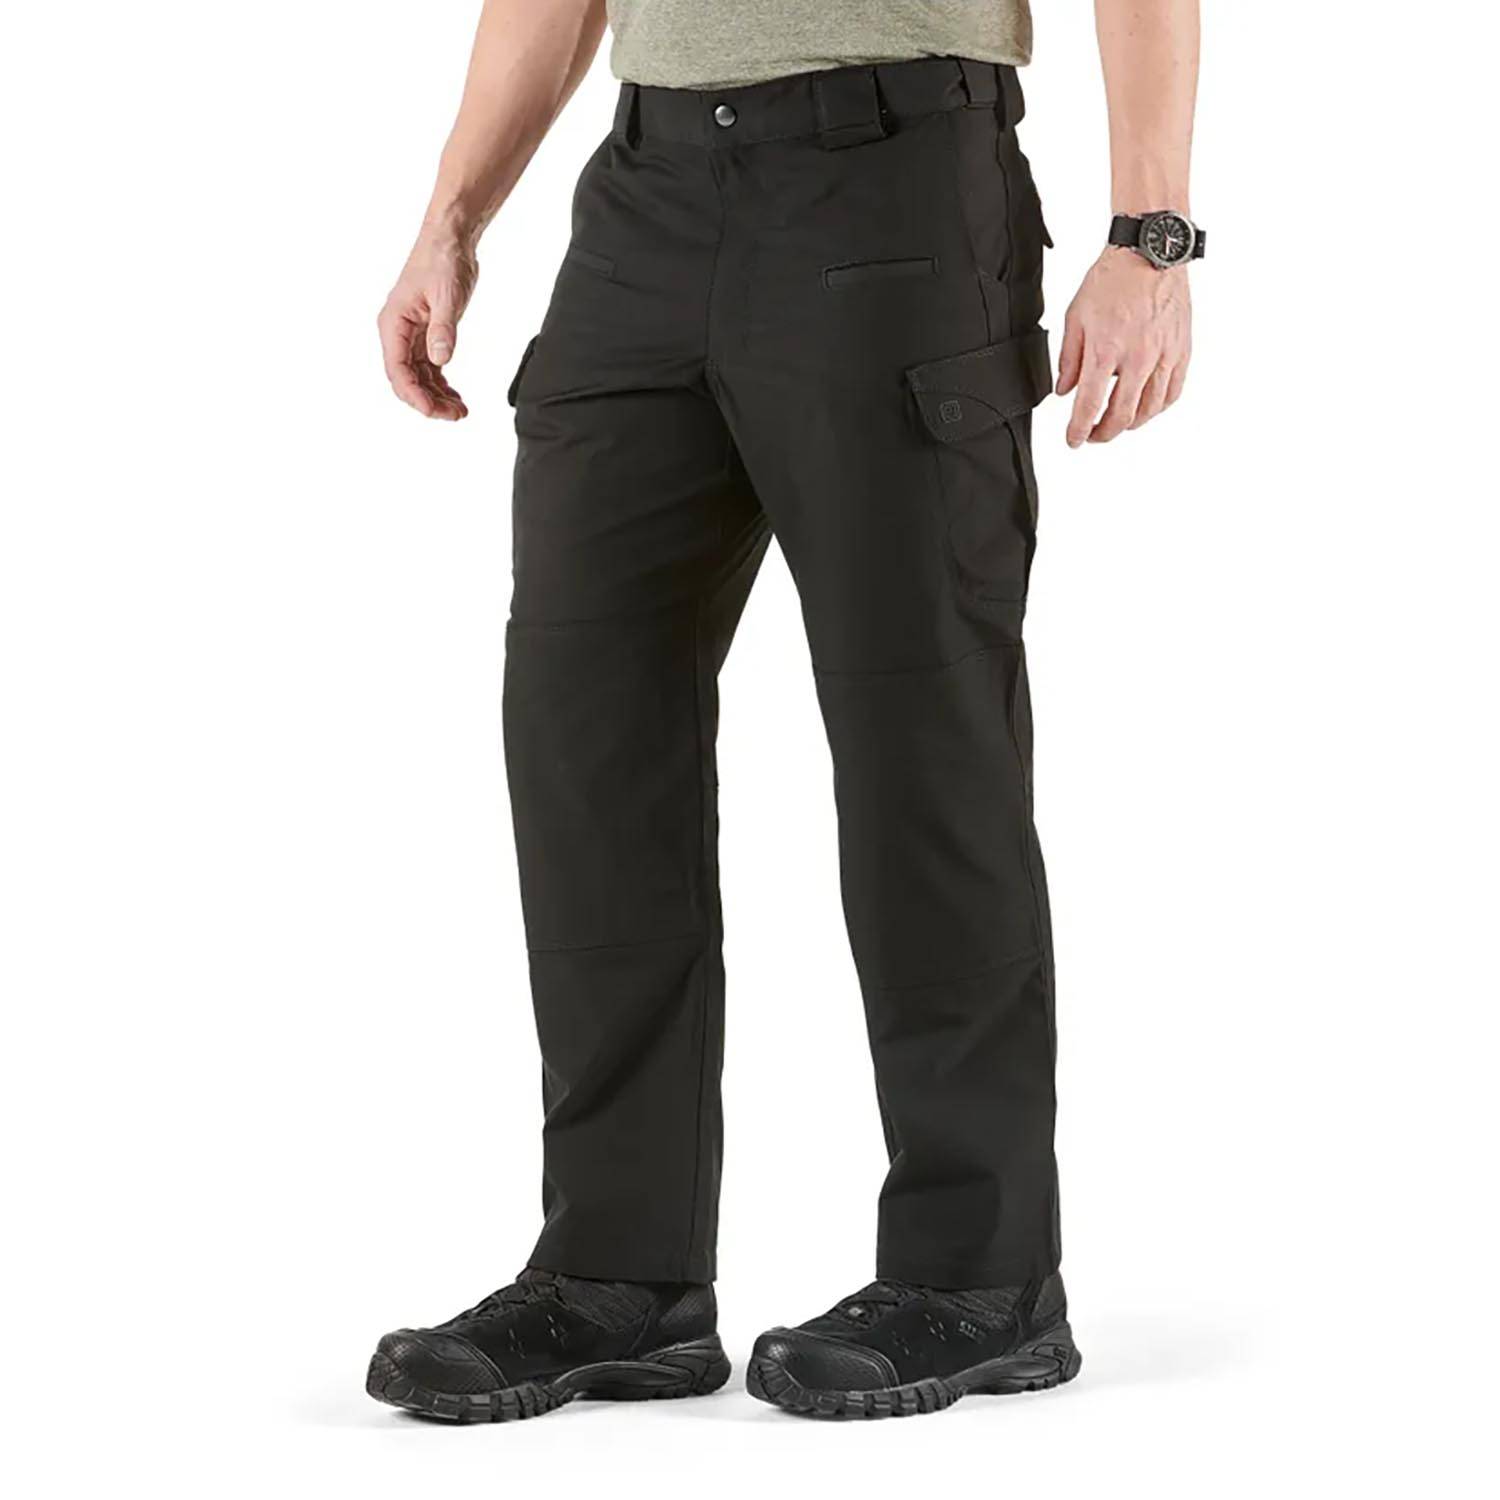 5.11 Tactical ABR Pro Pants